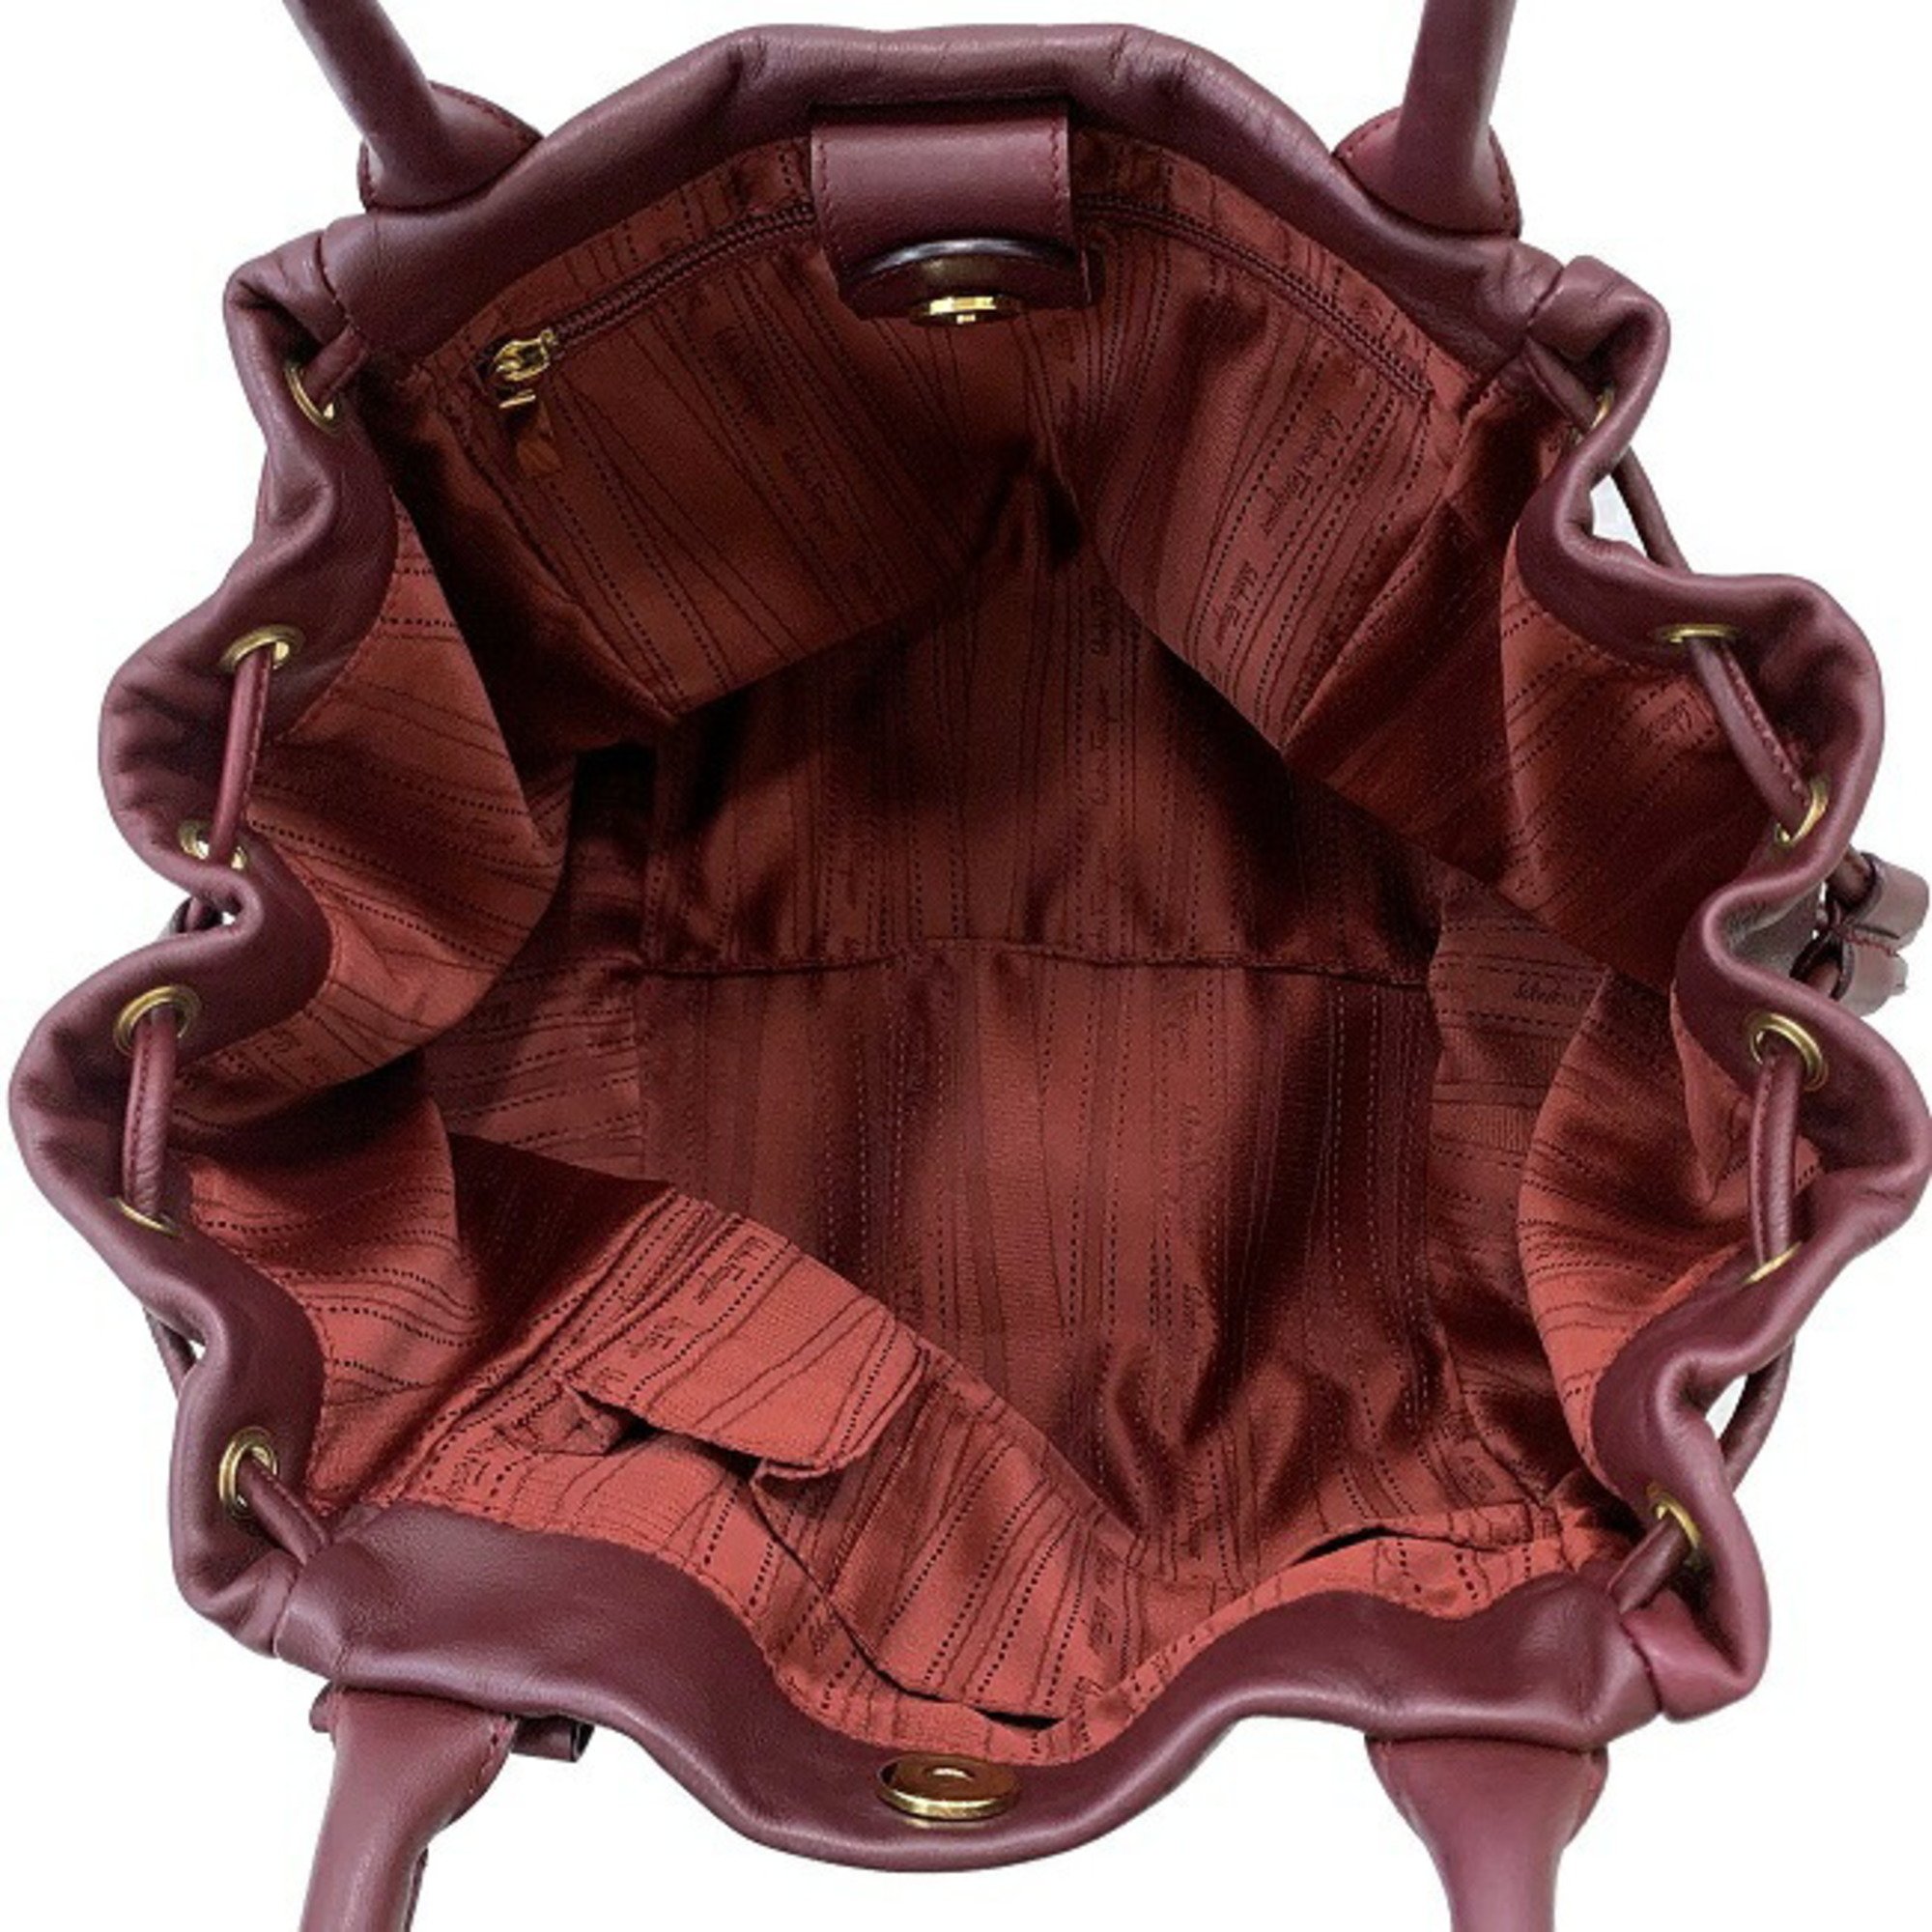 Salvatore Ferragamo Tote Bag Wine Red Ribbon Leather Women's Soft Handbag